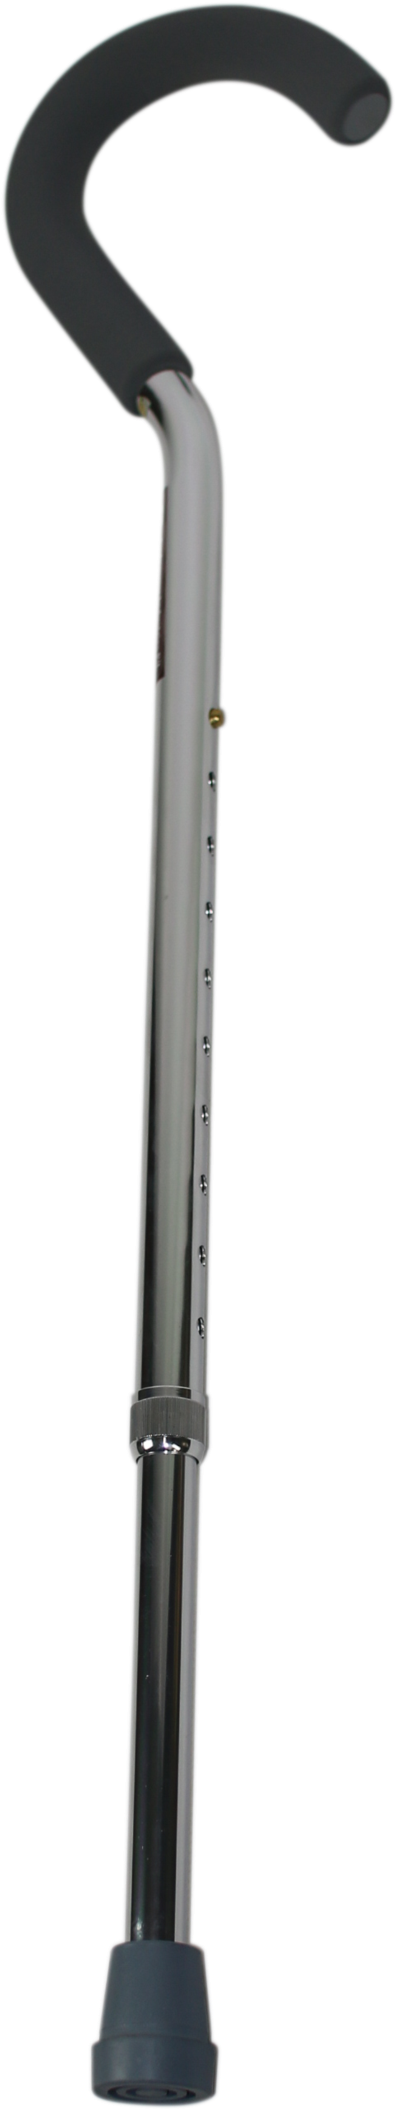 Adjustable Metal Walking Stick PNG image